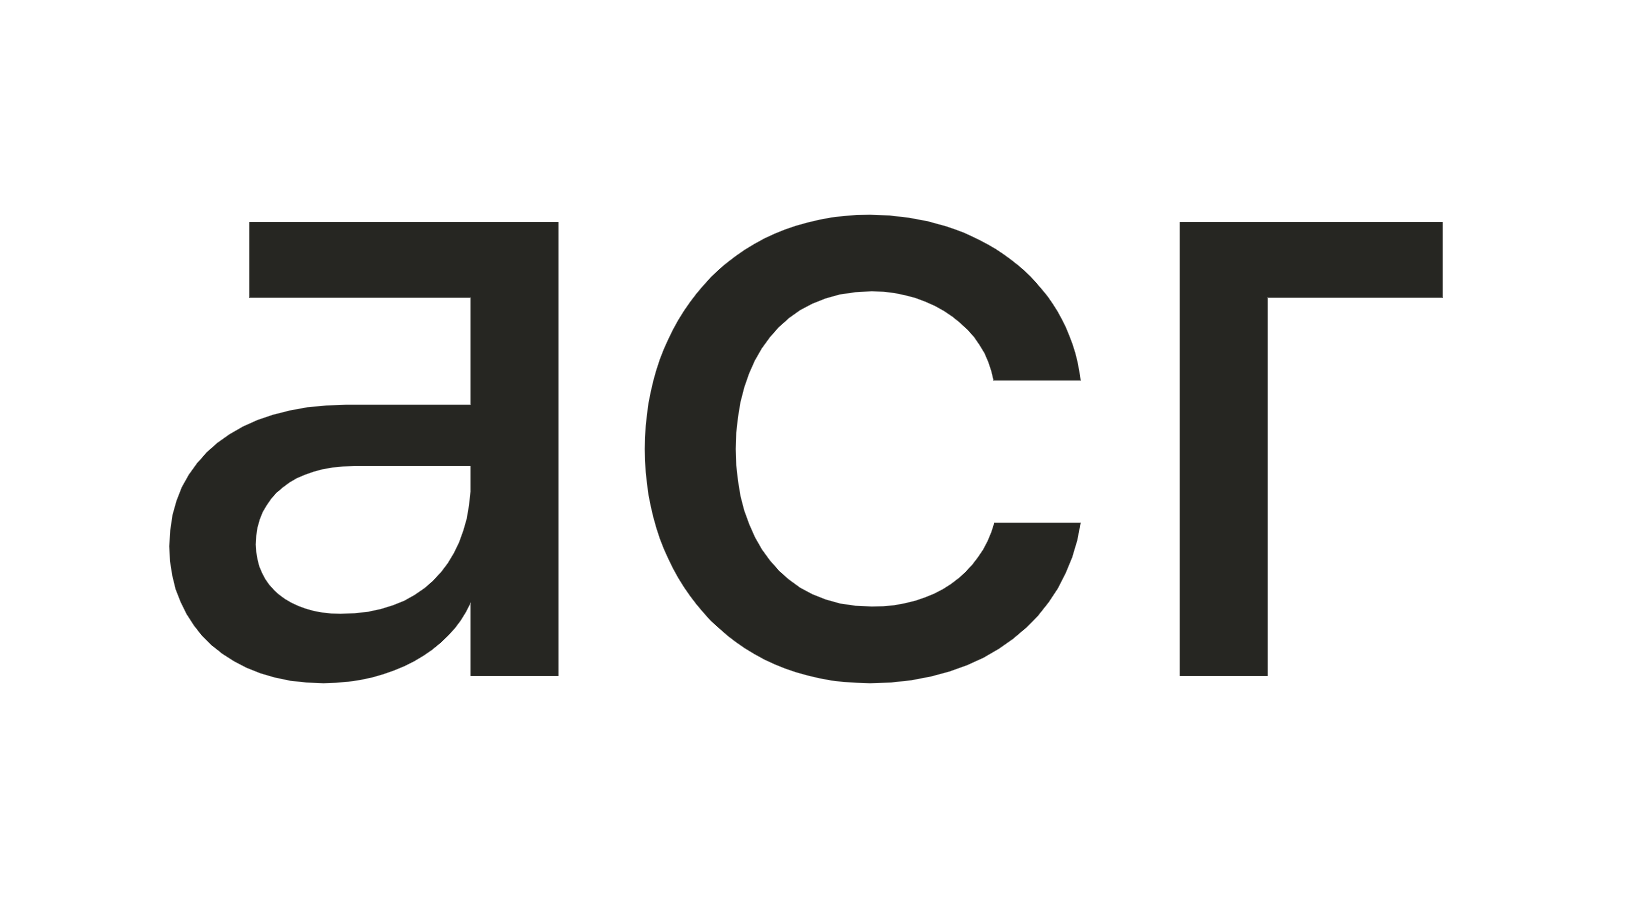 Logo ACR